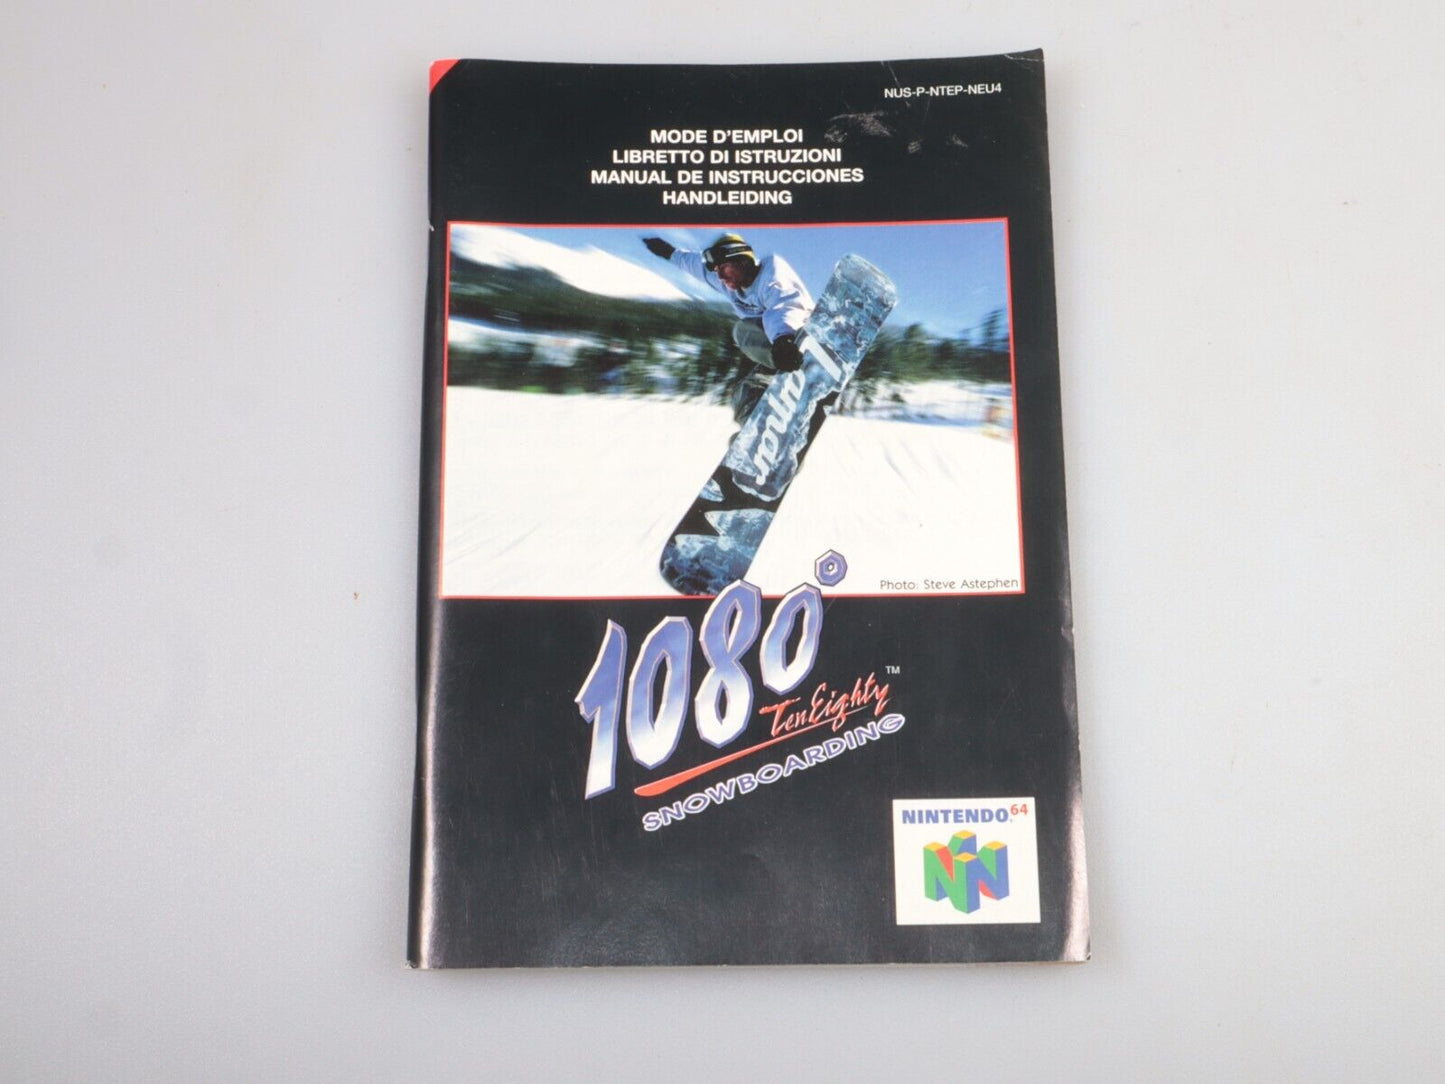 N64 | 1080 TenEighty Snowboarden (alleen cartridge) 